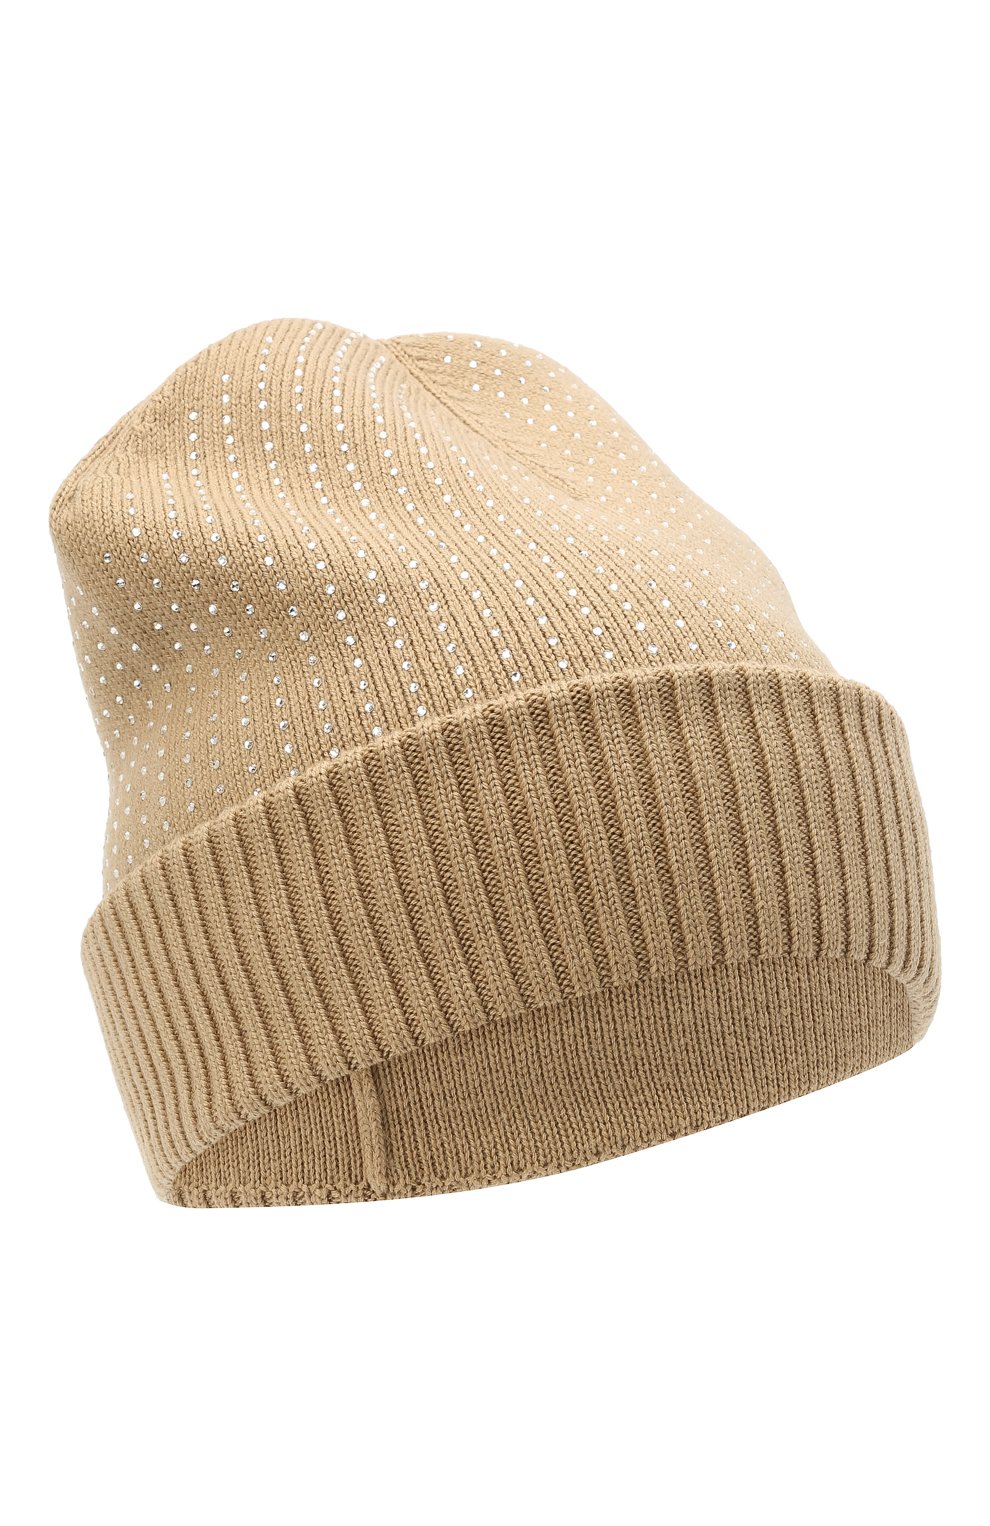 Женская шерстяная шапка BURBERRY бежевого цвета, арт. 8037547 | Фото 1 (Материал: Текстиль, Шерсть)